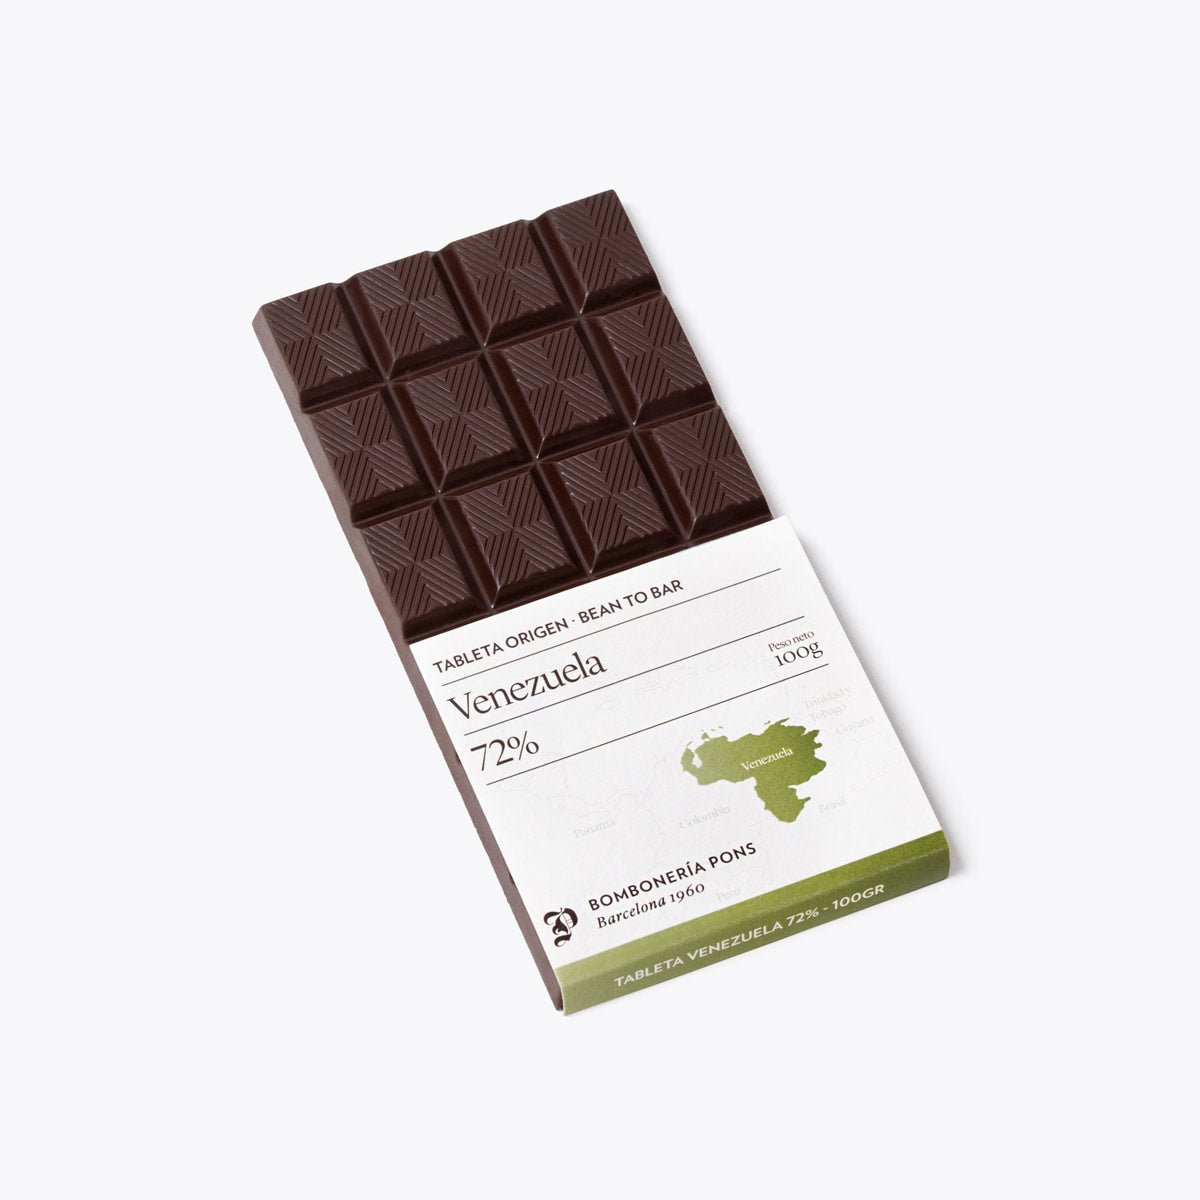 Venezuela - Tableta de chocolate negro 72% - 100g - Bombonería Pons -